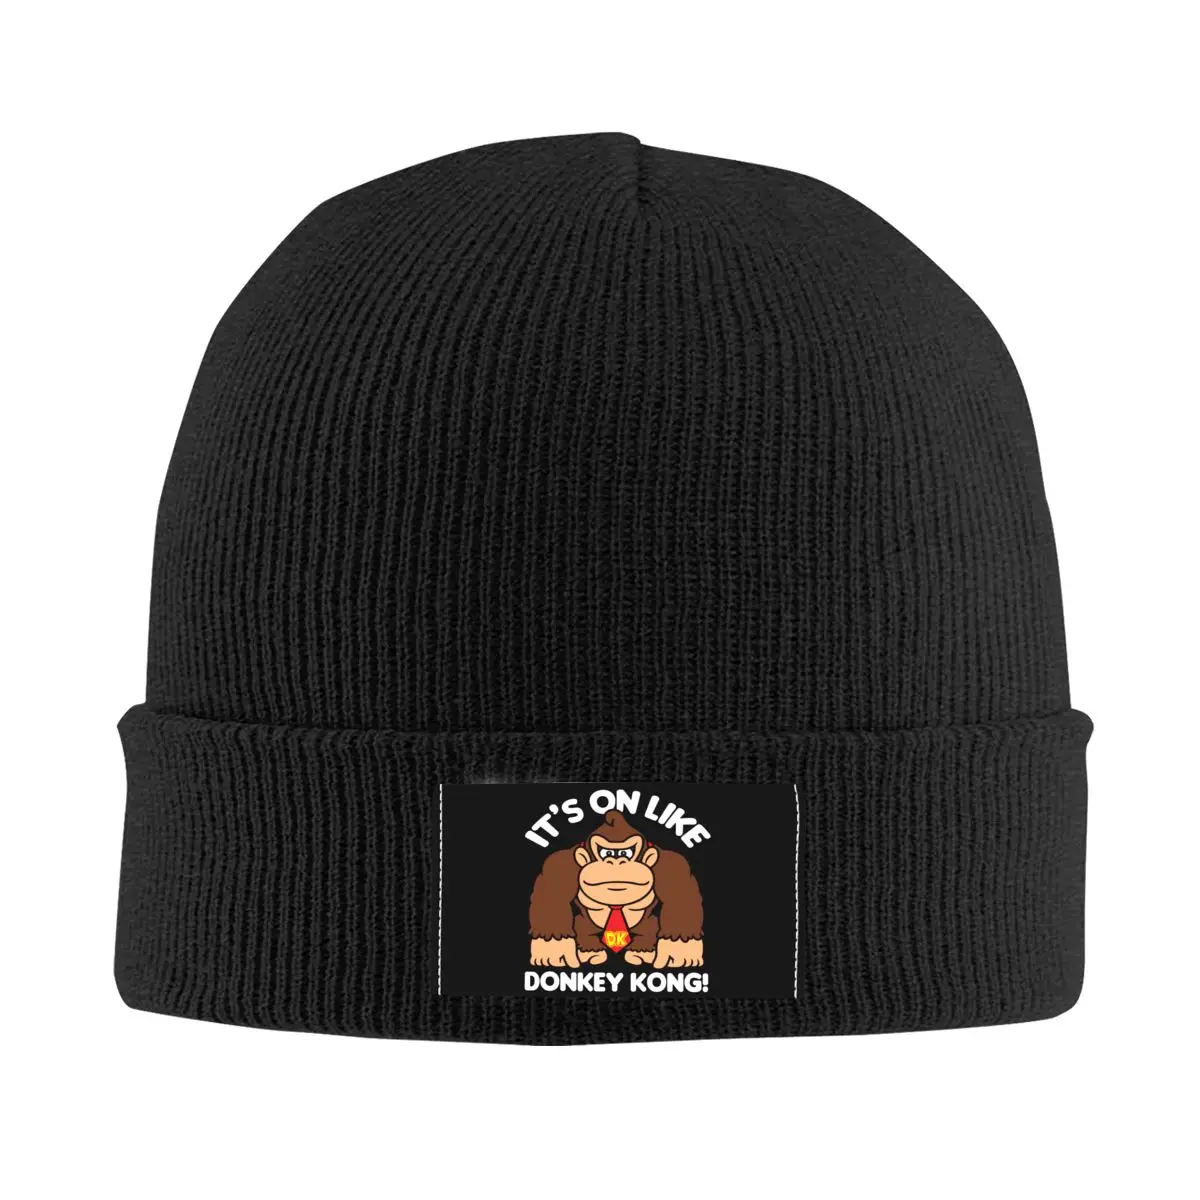 

Облегающая шапка It's On Donkey Kong, зимняя теплая шапочка, женские вязаные шапки, уличные шапочки Gorilla Skullies, облегающие шапки для мужчин и женщин